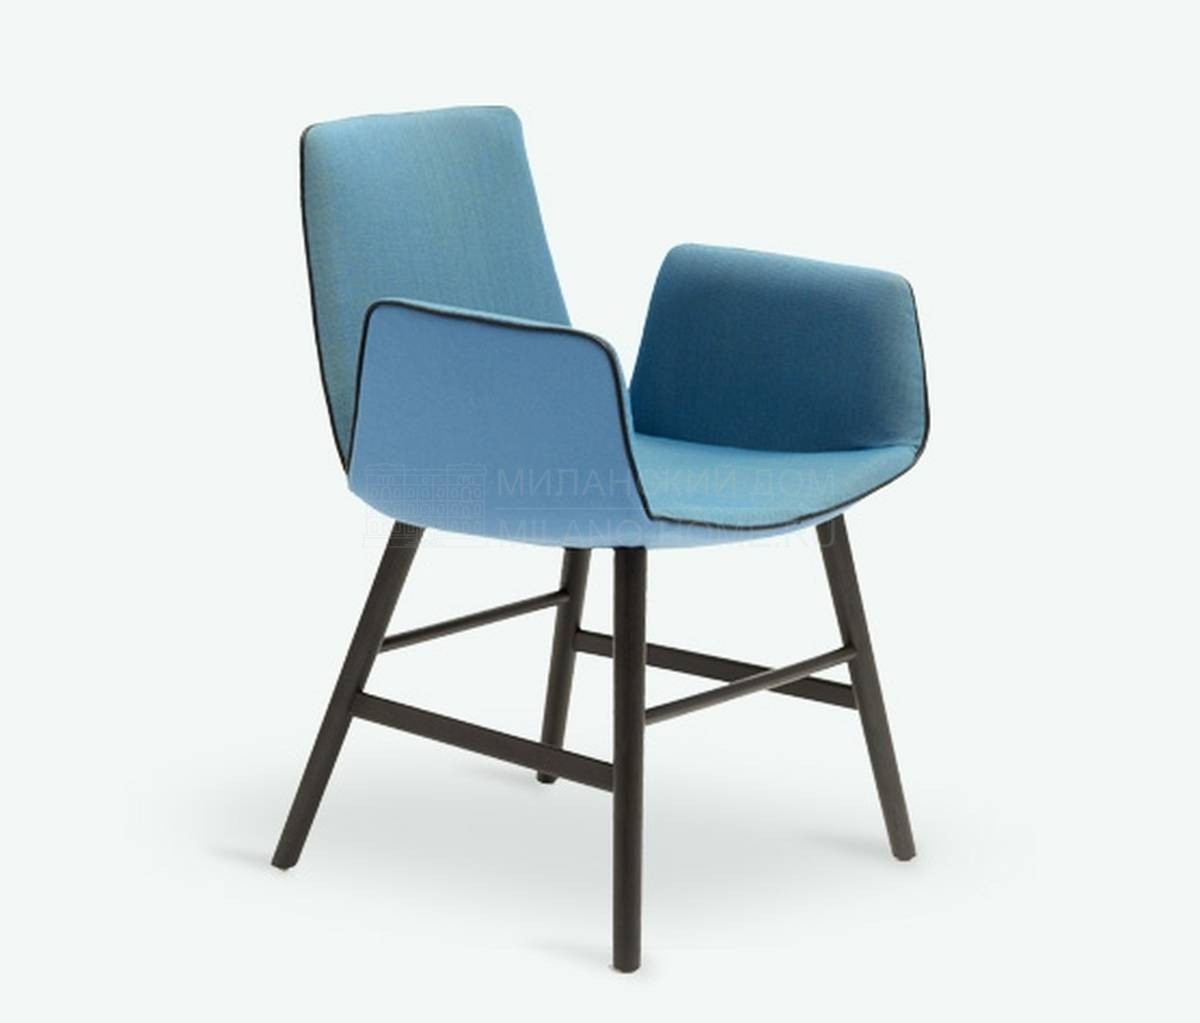 Полукресло Amelie chair color из Германии фабрики FREIFRAU